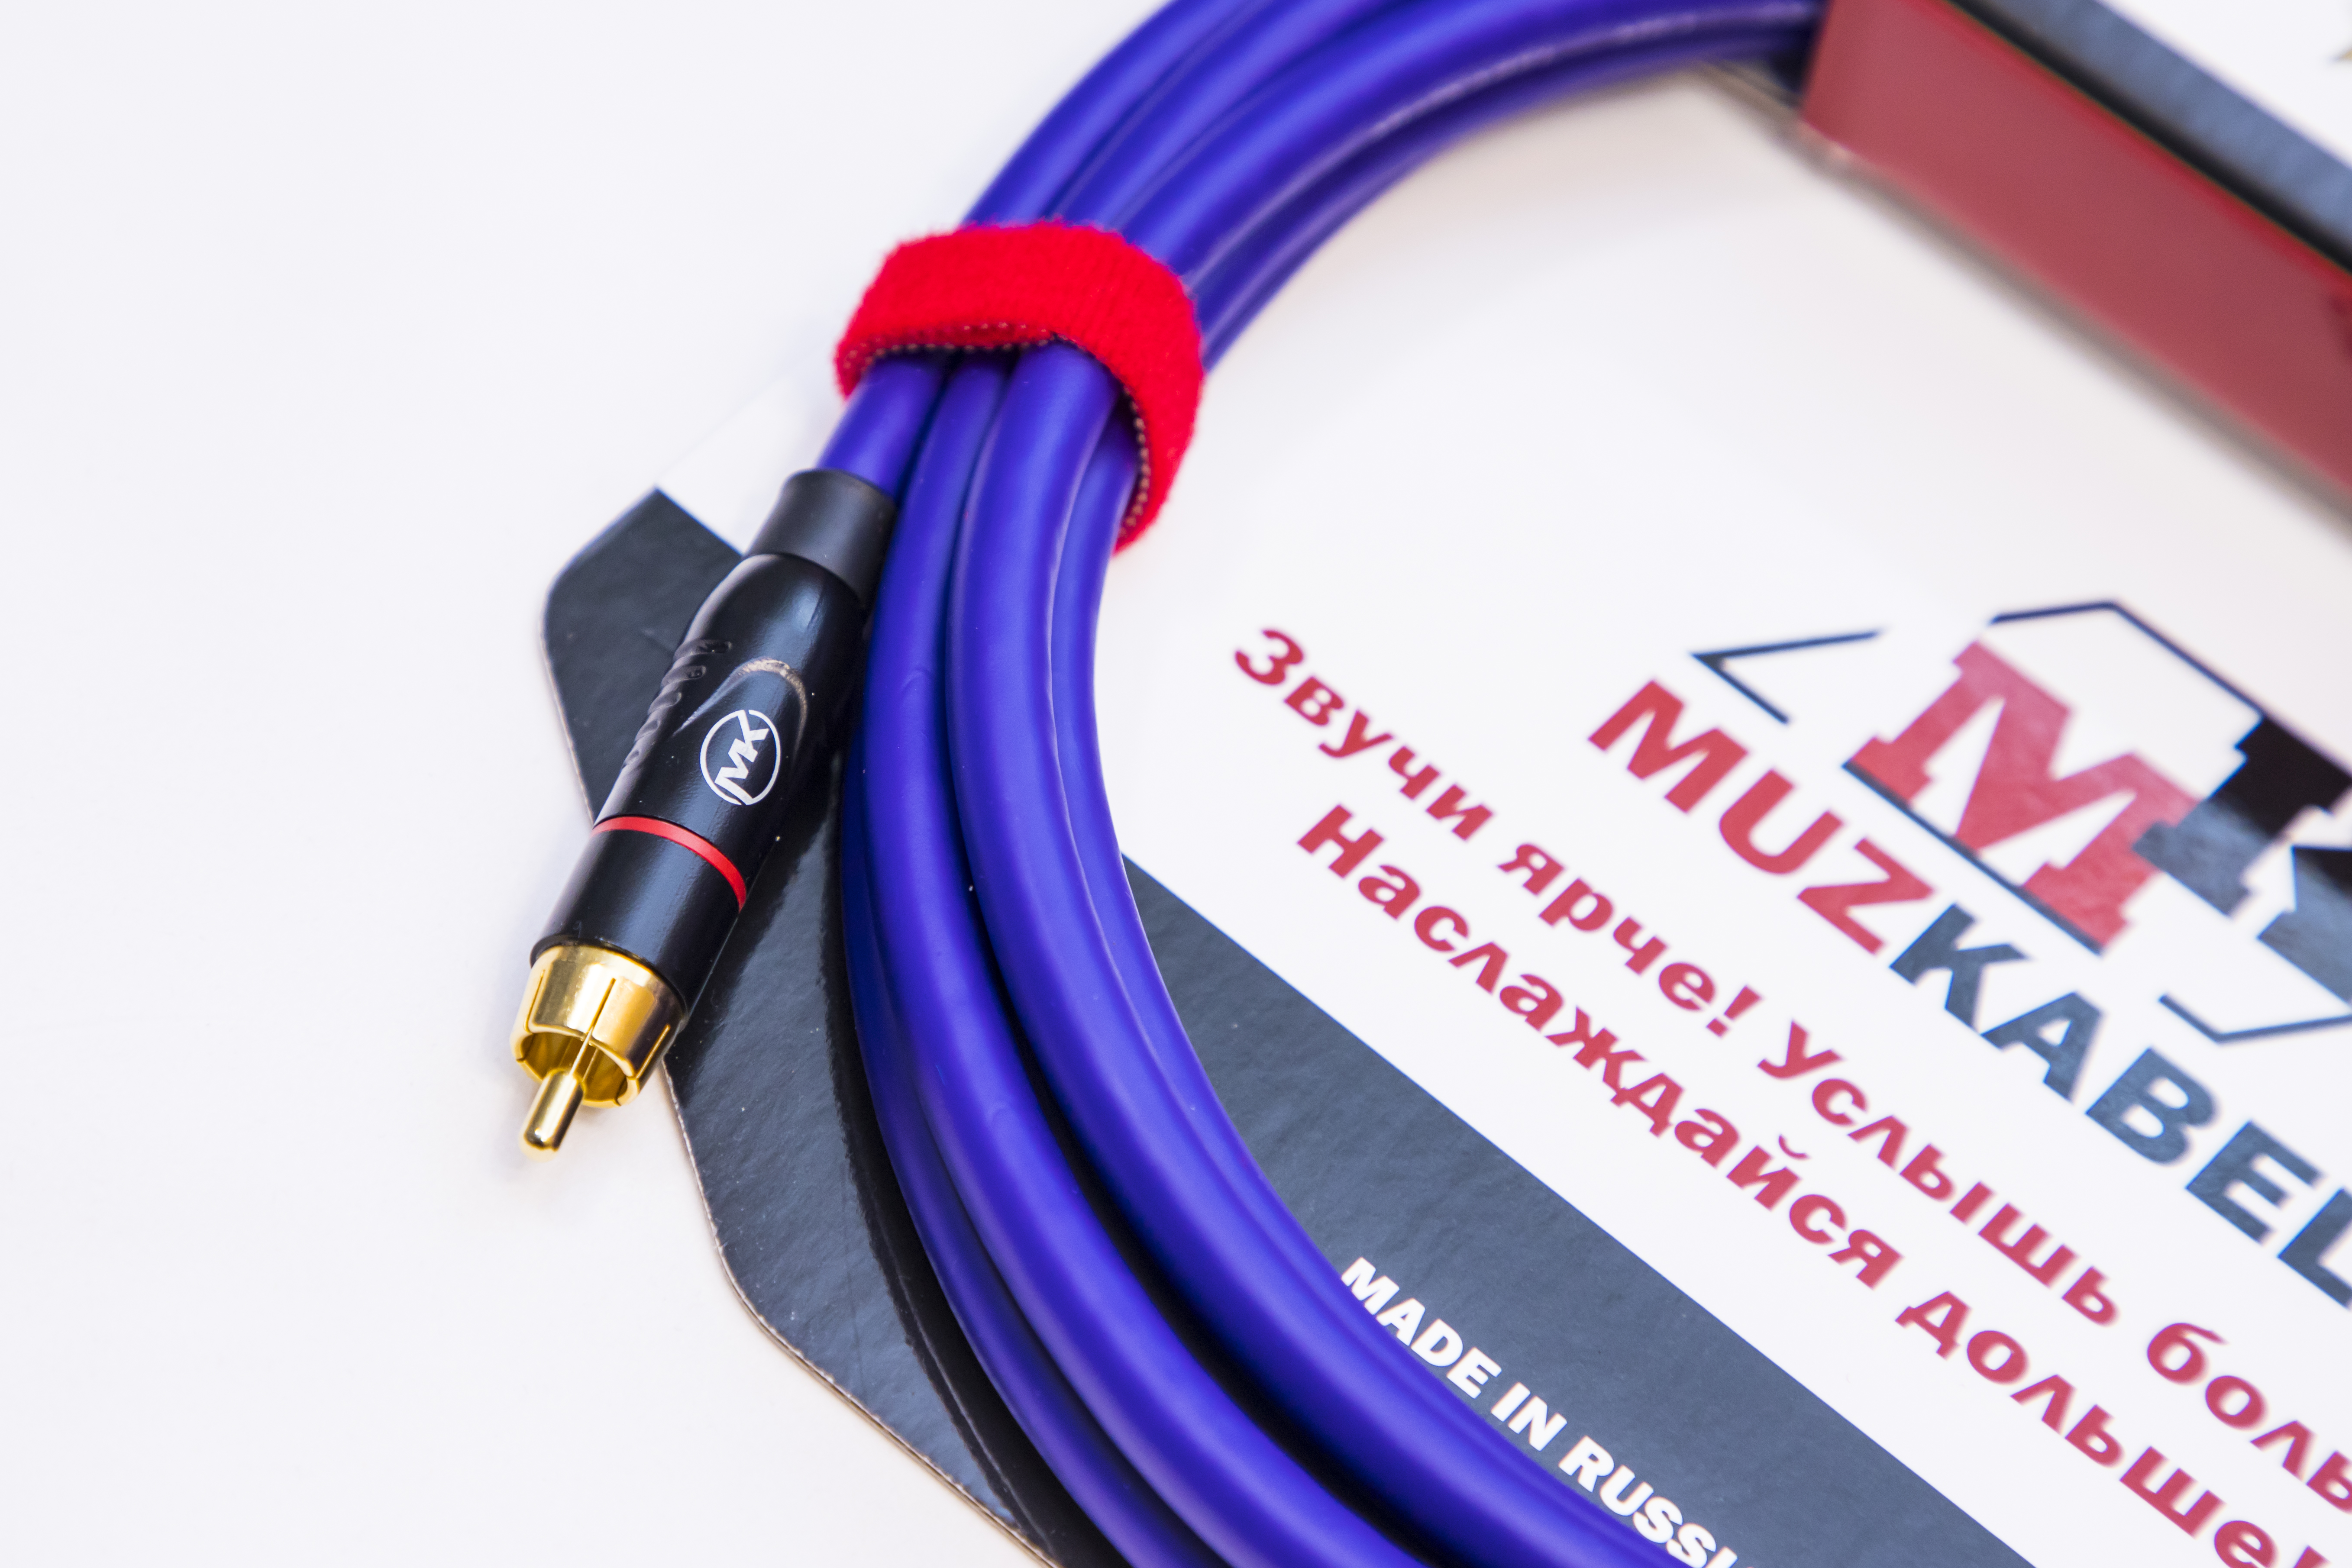 Аудио кабель MUZKABEL RSFIK4V - 3 метра, RCA – RCA